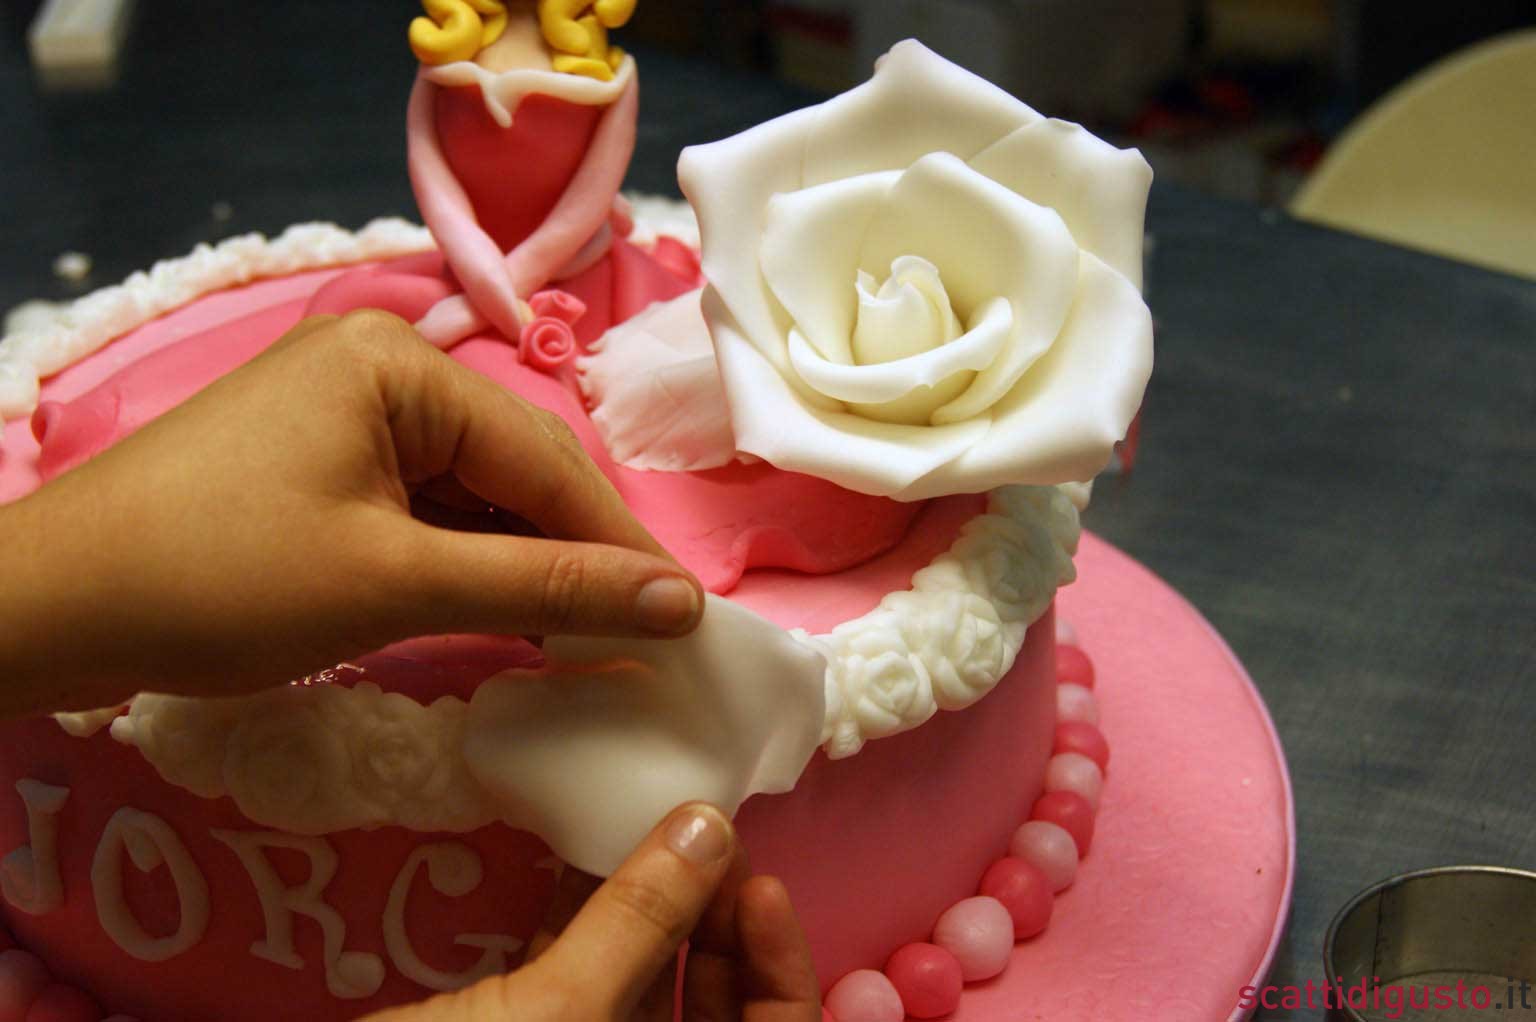 Cake design. Il tutorial per una rosa in pasta di zucchero perfetta